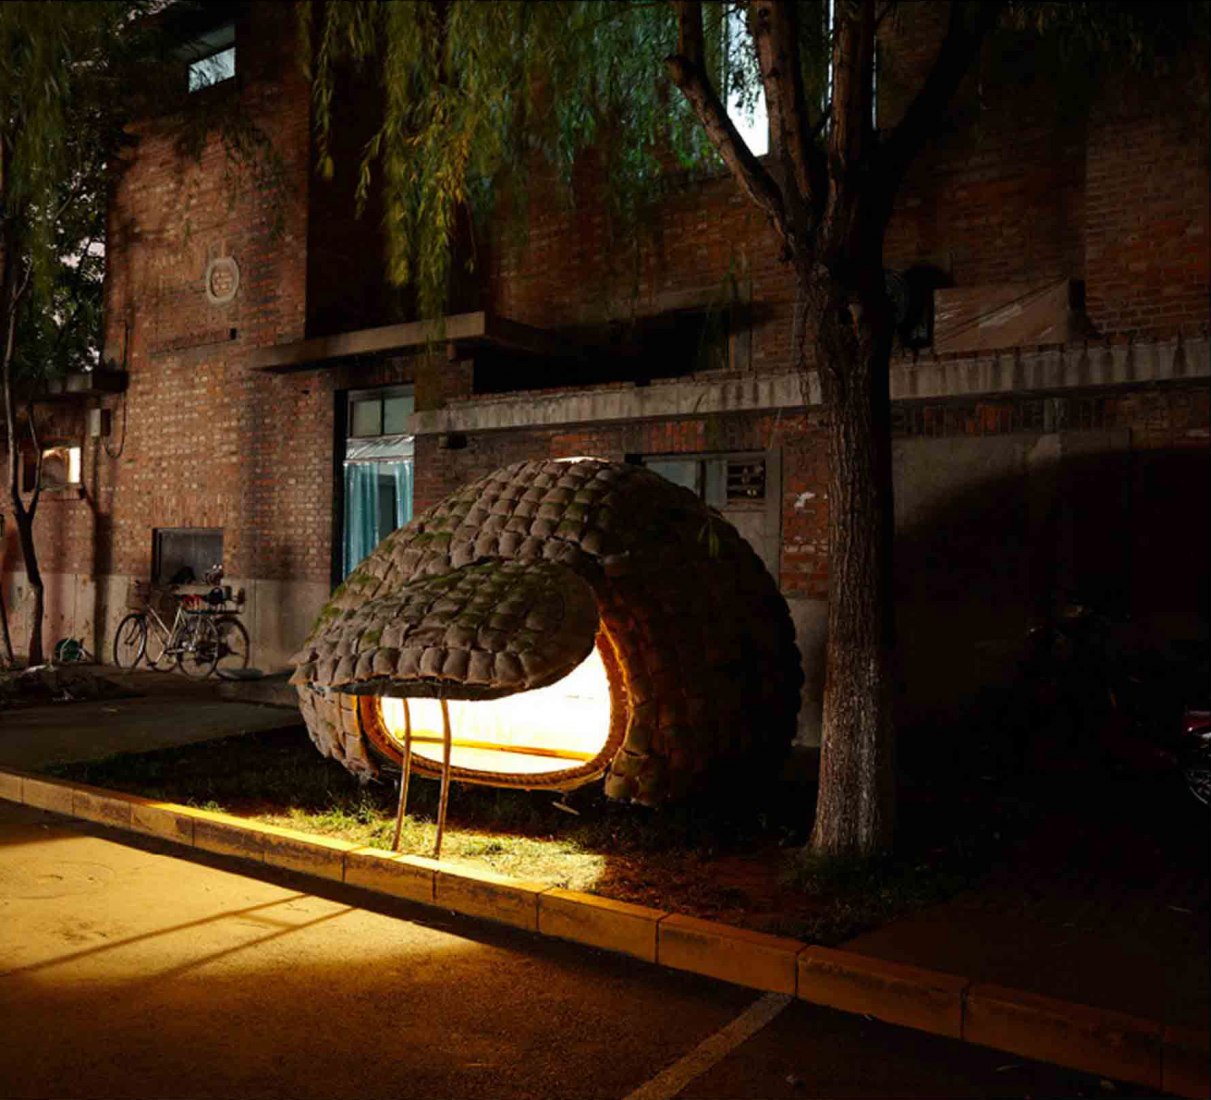 Egg house by Dai Haifei.